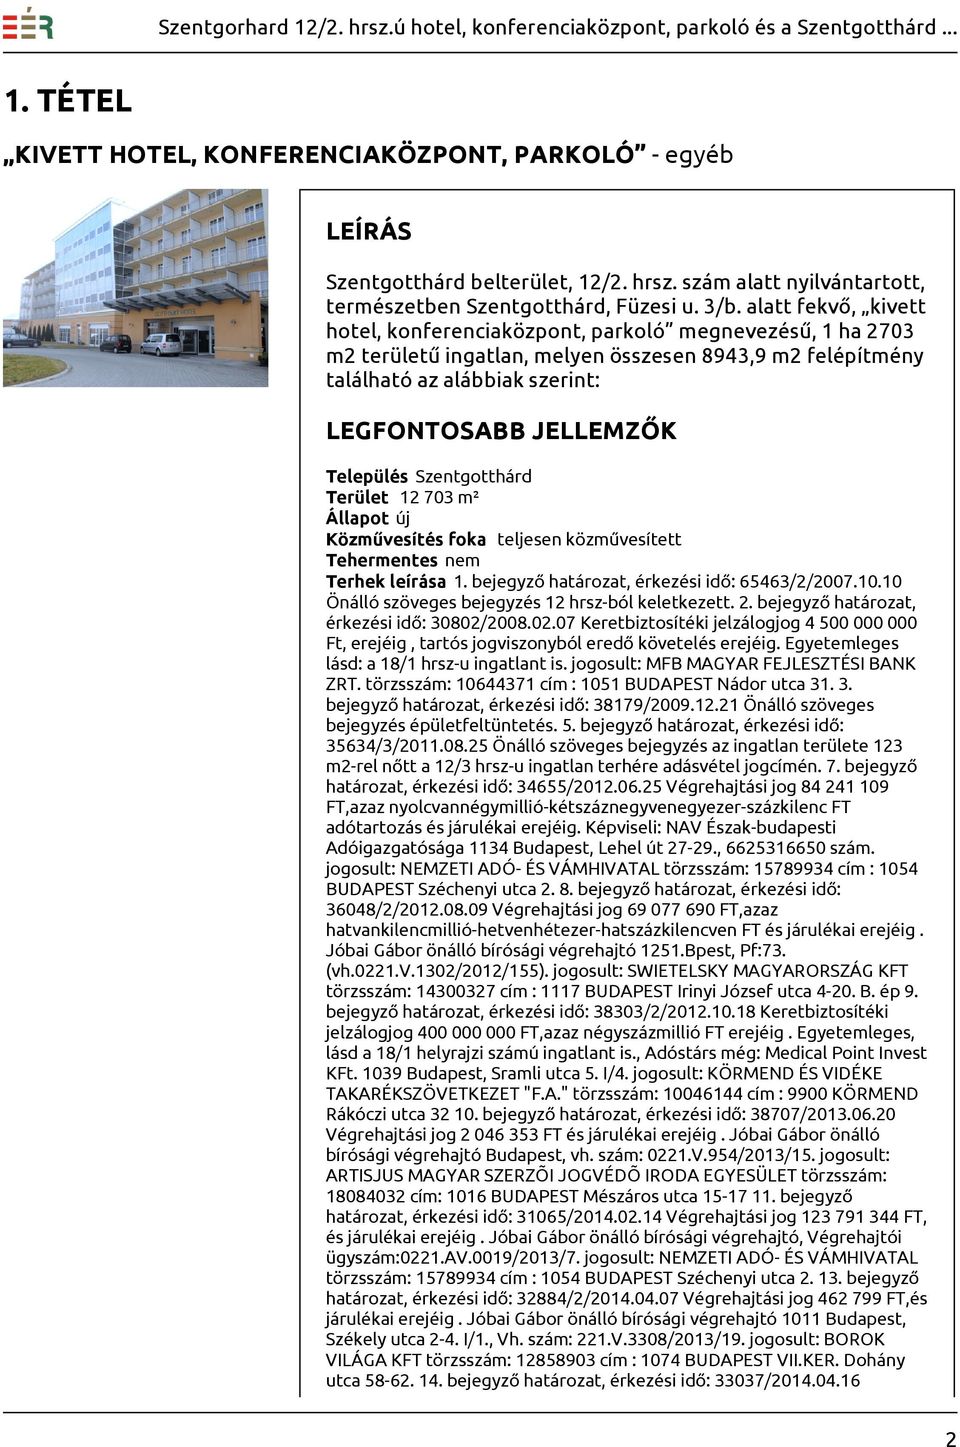 Település Szentgotthárd Terület 12 703 m² Állapot új Közművesítés foka teljesen közművesített Tehermentes nem Terhek leírása 1. bejegyző határozat, érkezési idő: 65463/2/2007.10.